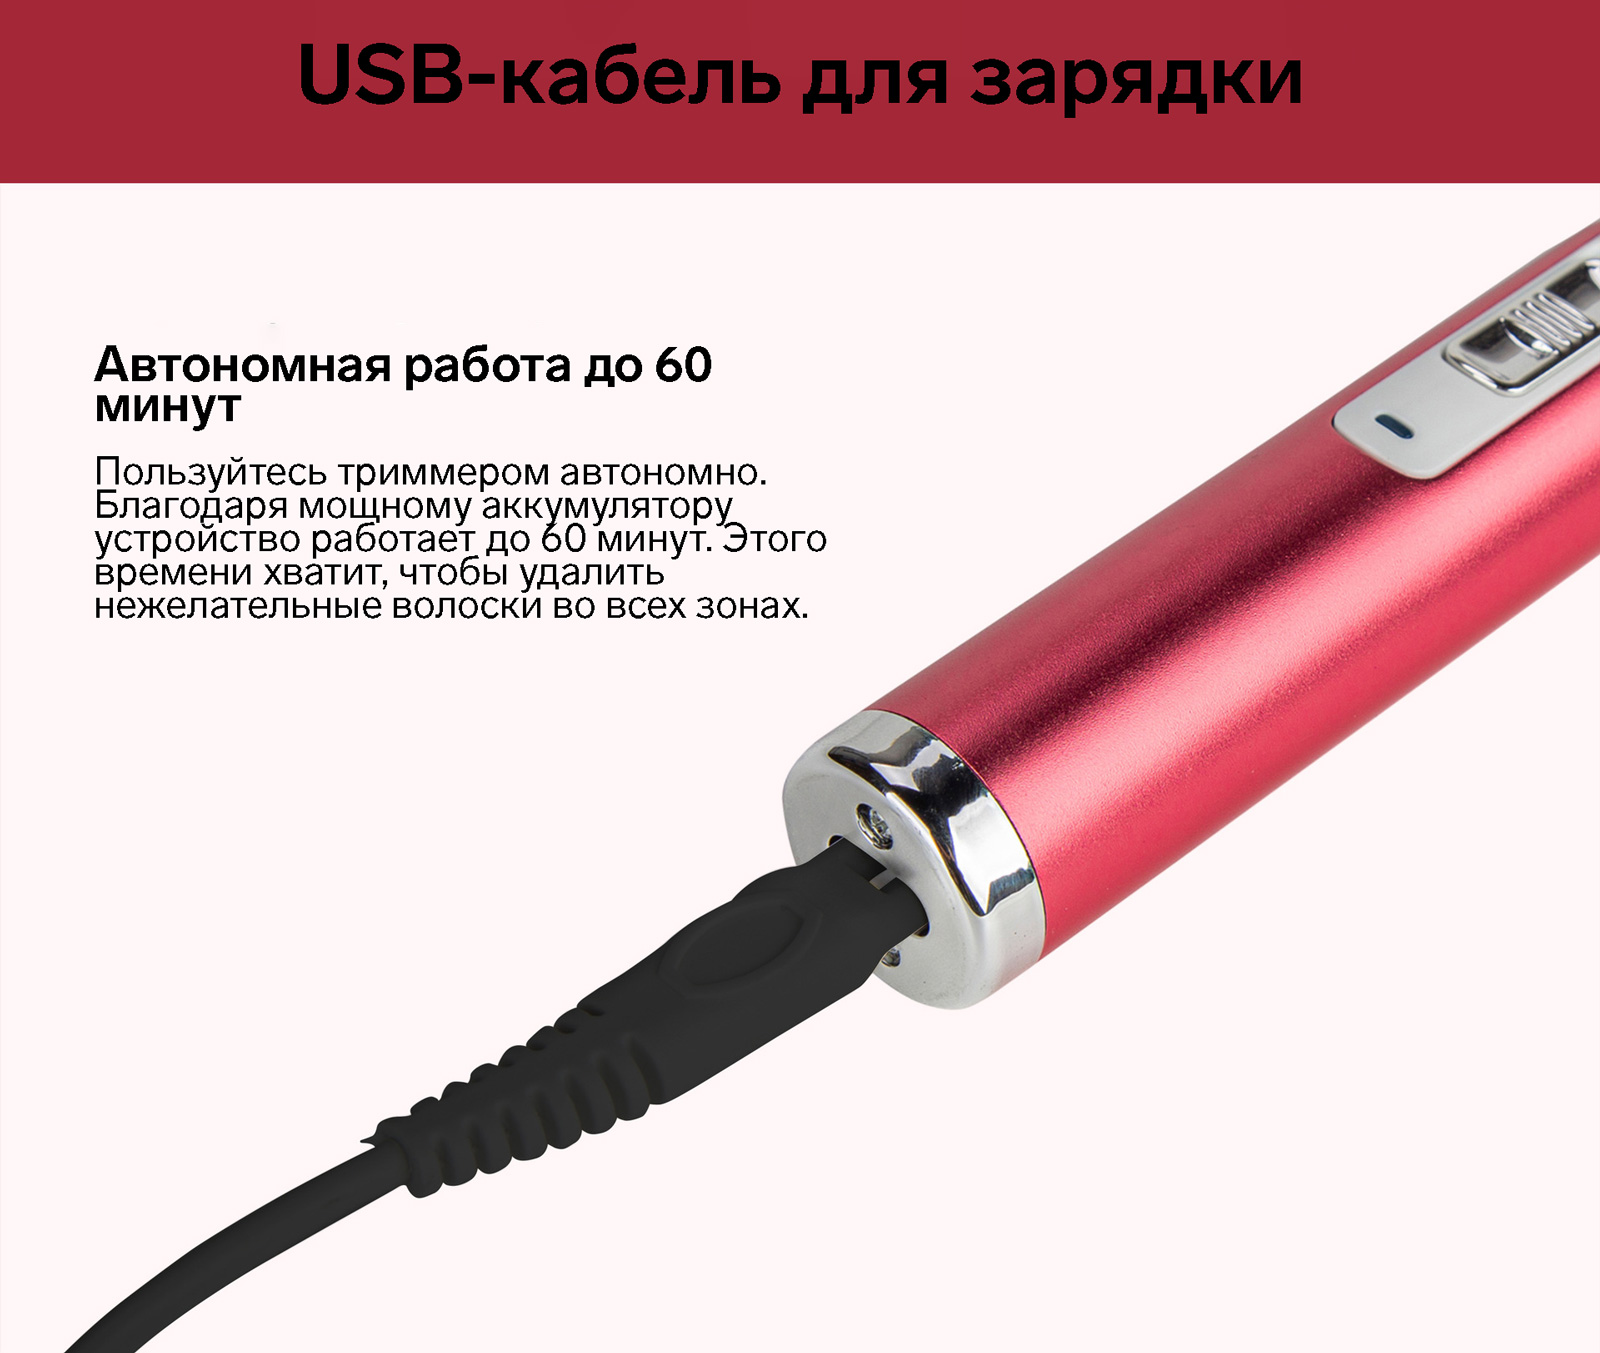 USB-кабель в комплекте